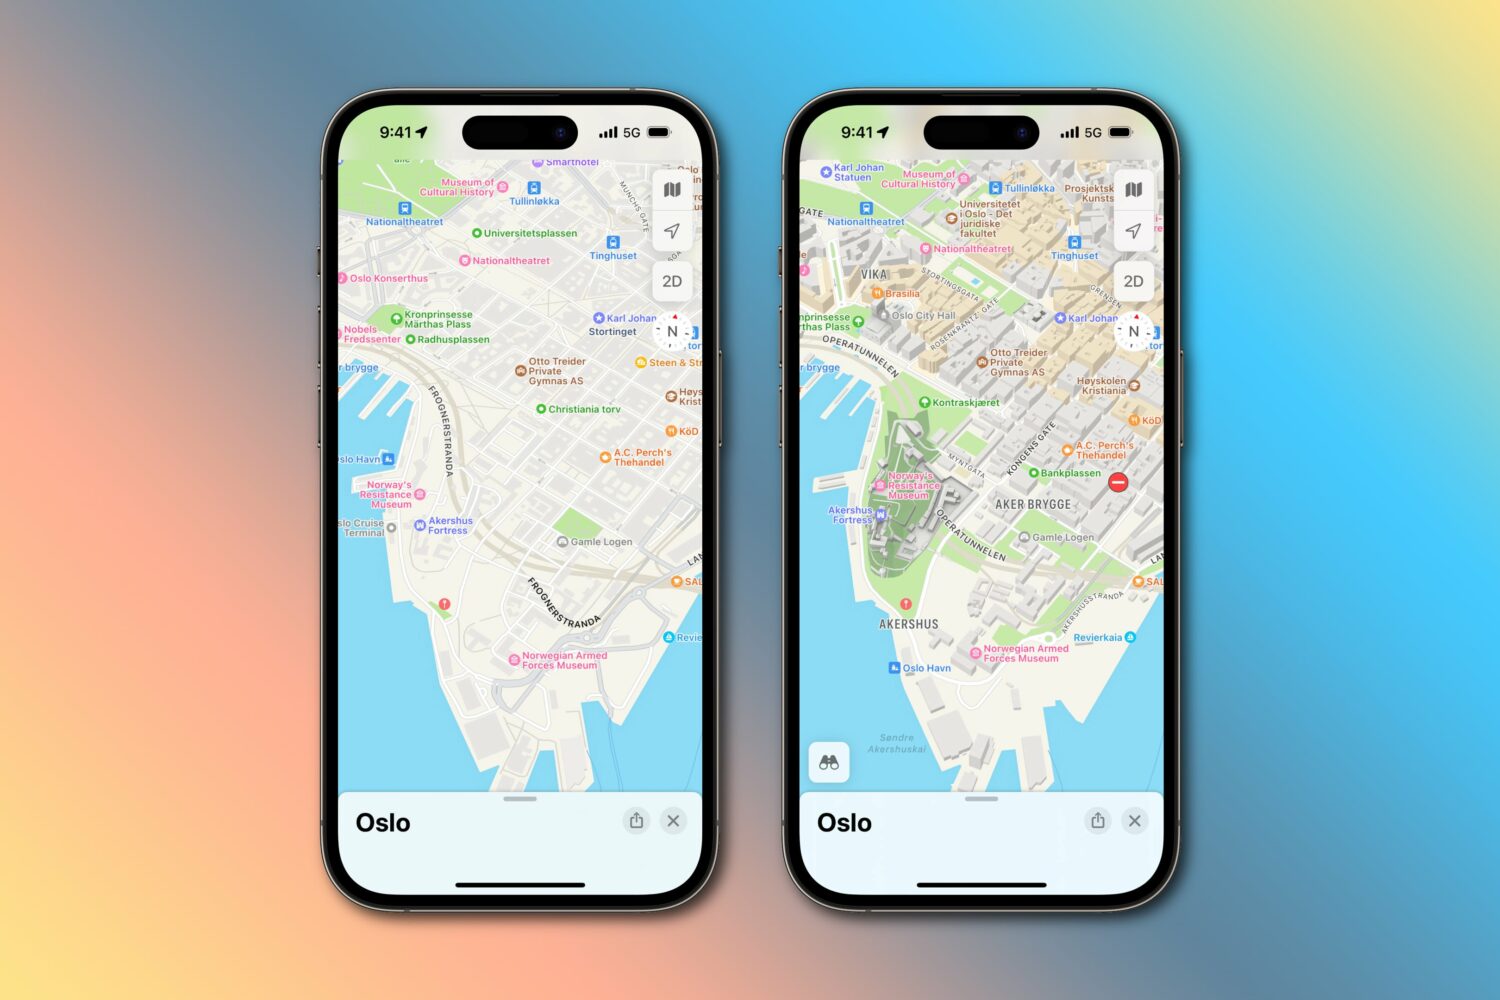 Apple Maps data in Oslo: old vs. new